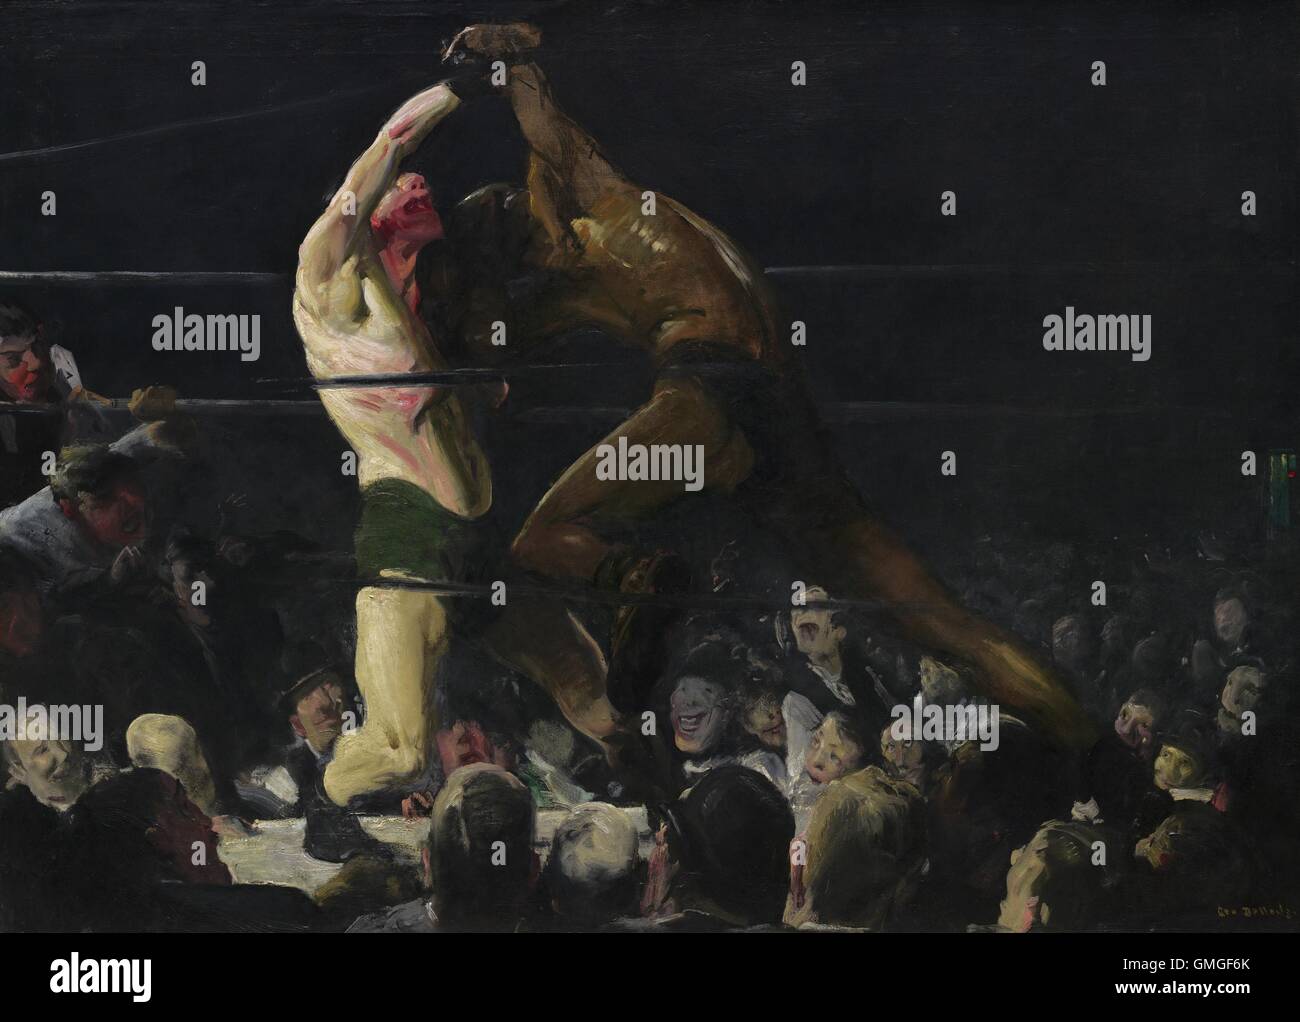 Les deux membres de ce club, par George Bellows, 1909, American peinture, huile sur toile. Peinture représente un match sportif interracial, avec un boxer blanc combat une afro-américaine. La popularité de ces correspondances ont été alimentée par les préjugés raciaux, qui culminera avec BSLOC  2016 (6 85) Banque D'Images